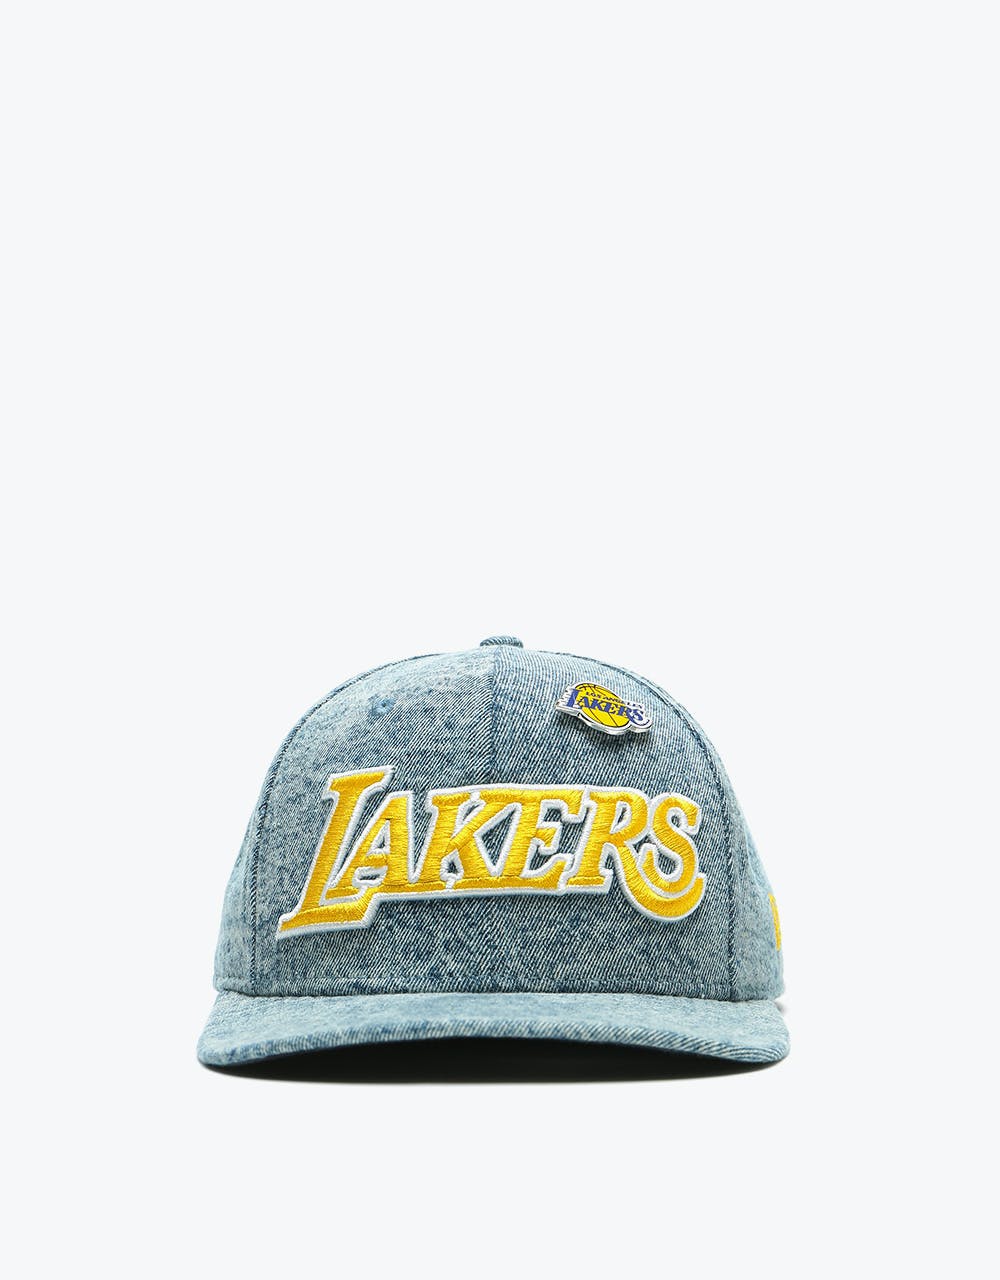 New Era 9Fifty NBA LA Lakers Denim Snapback Cap - Light Blue